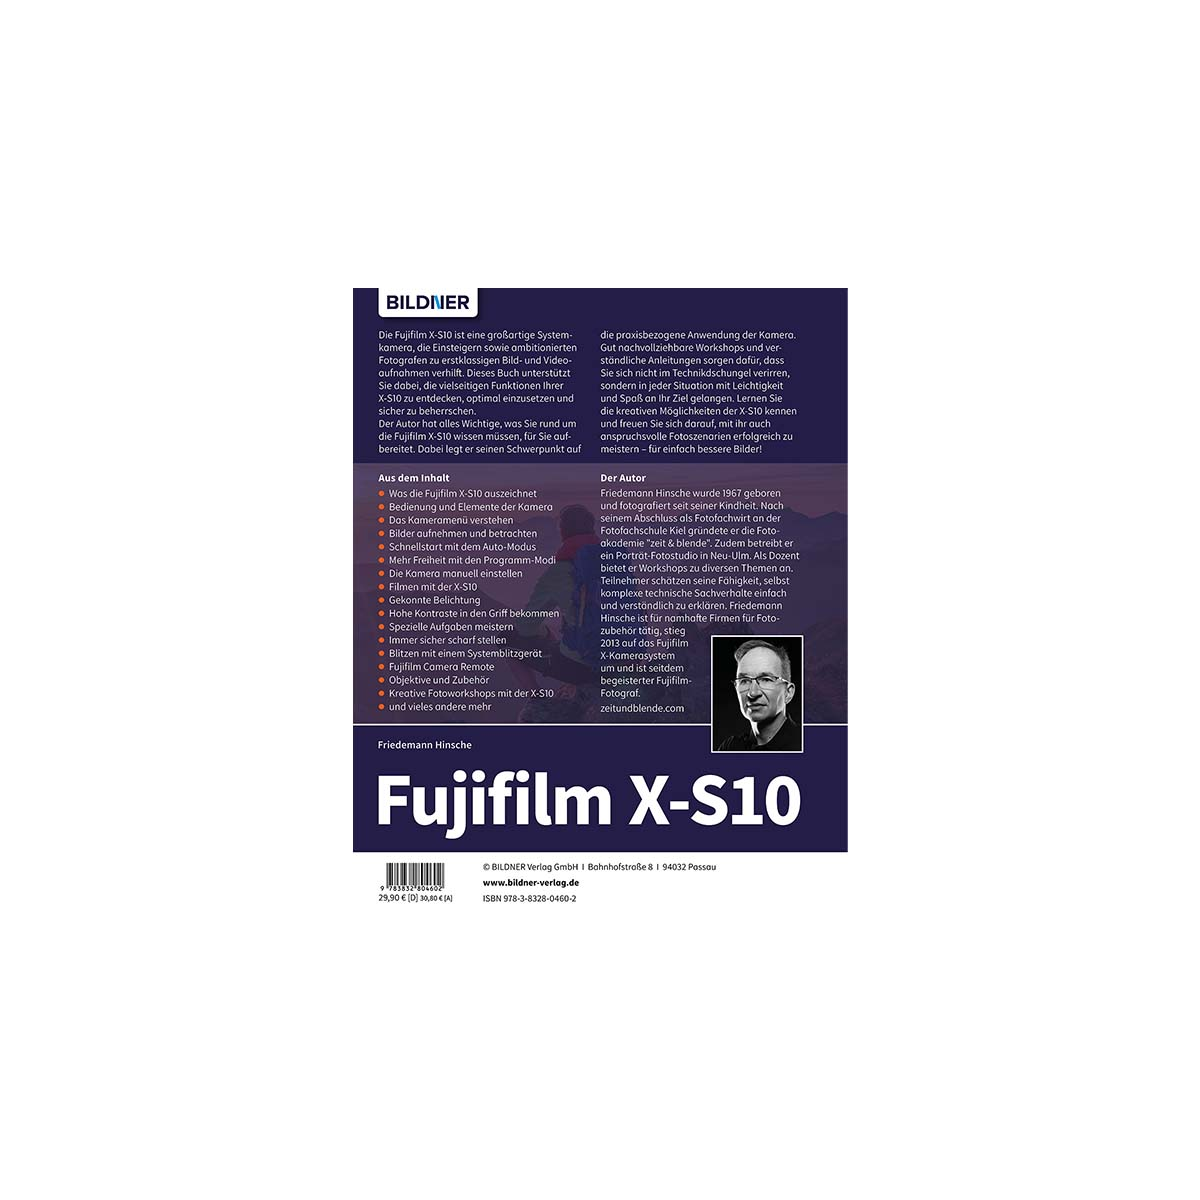 Fujifilm X-S10 - umfangreiche Praxisbuch zu Das Kamera! Ihrer